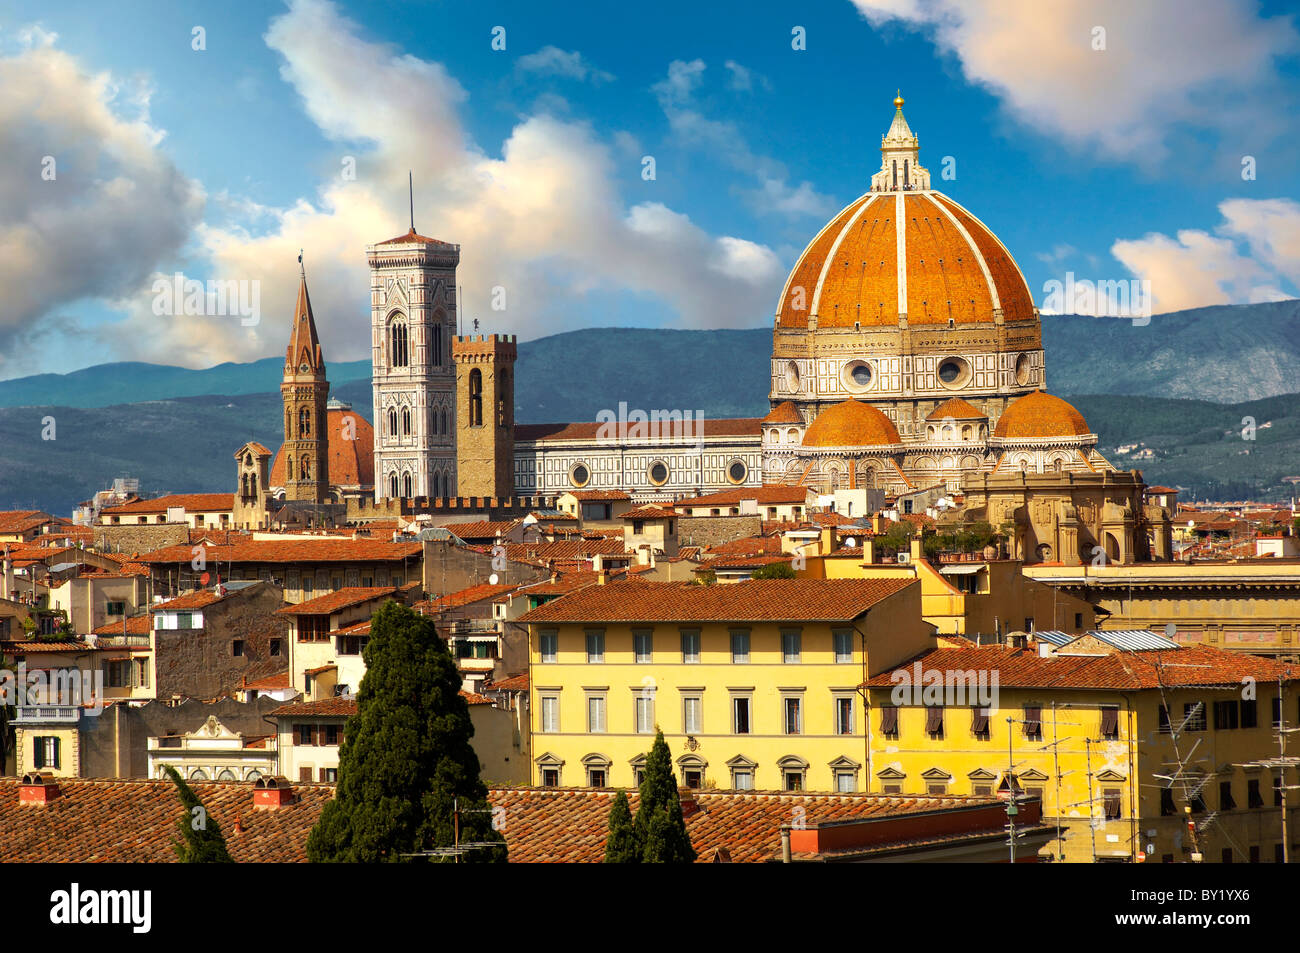 Dach Blick von oben auf die belll Turm und Kuppel des Doms von Florenz, Italien Stockfoto